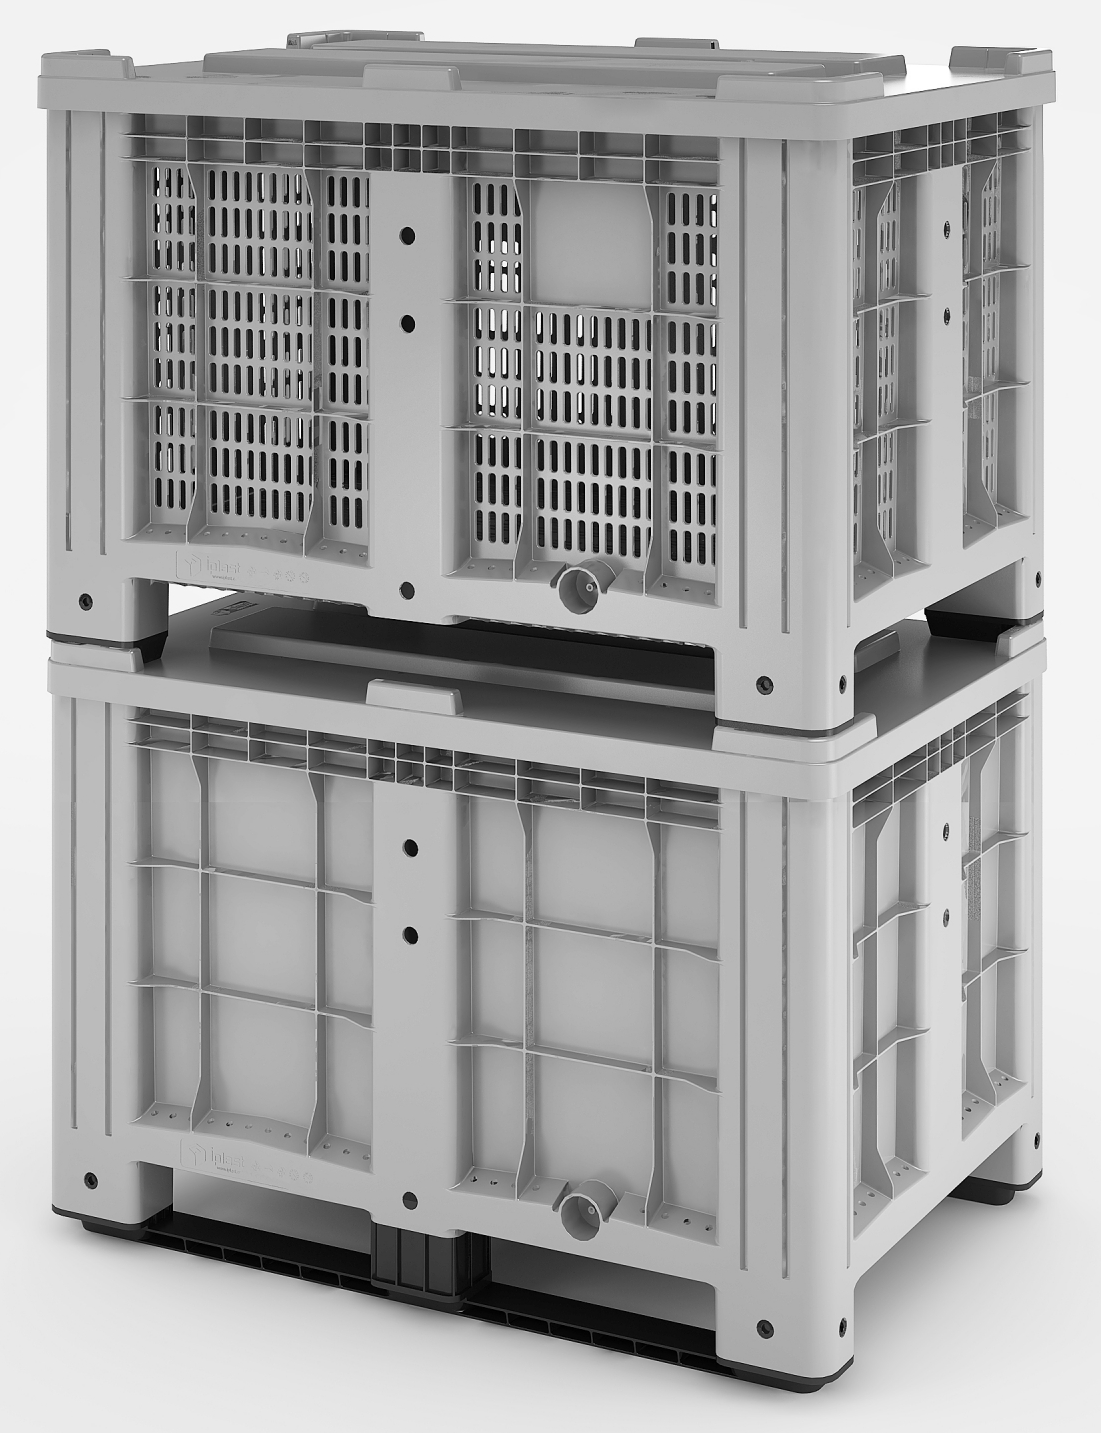 11.602F.91.PE.C10 Пластиковый контейнер iBox 1200х800 (сплошной, на ножках) г. Ижевск TARA-RU.RU (3412) 57-67-95